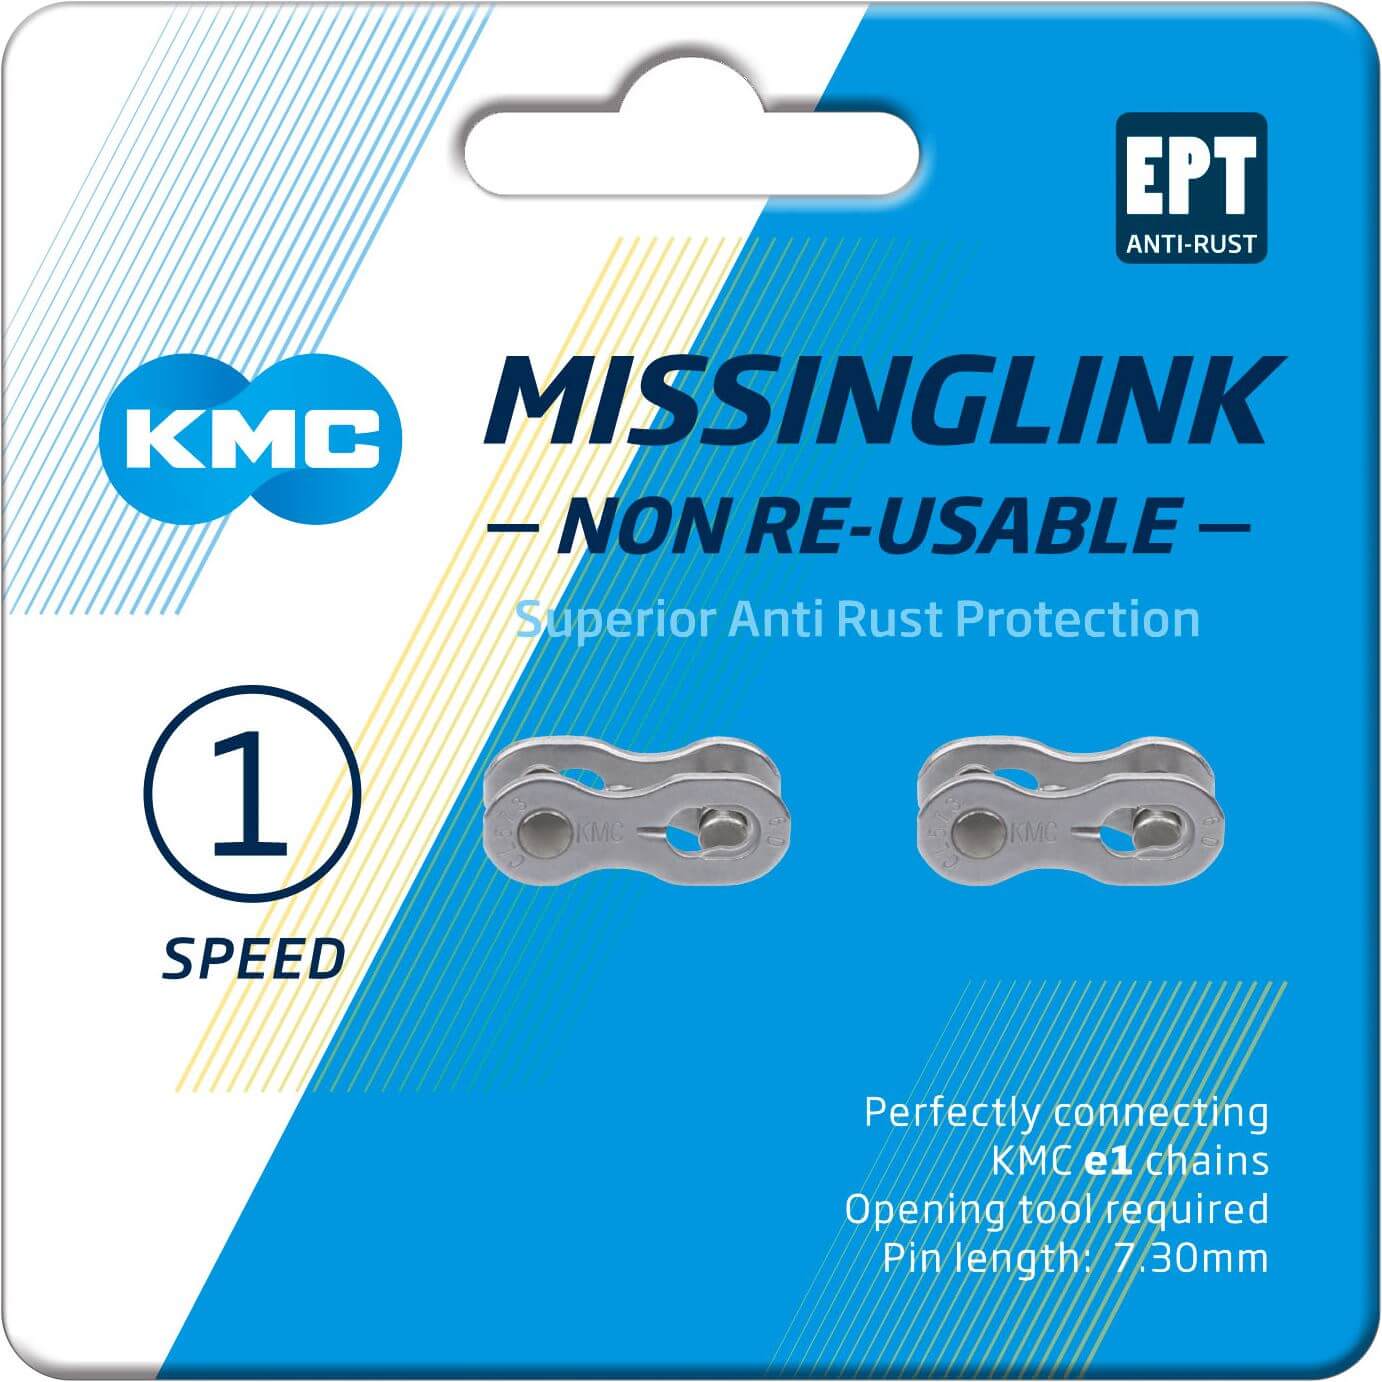 KMC MissingLink E1 E8 EPT, 3 32, 2 stuks, zilverkleurig